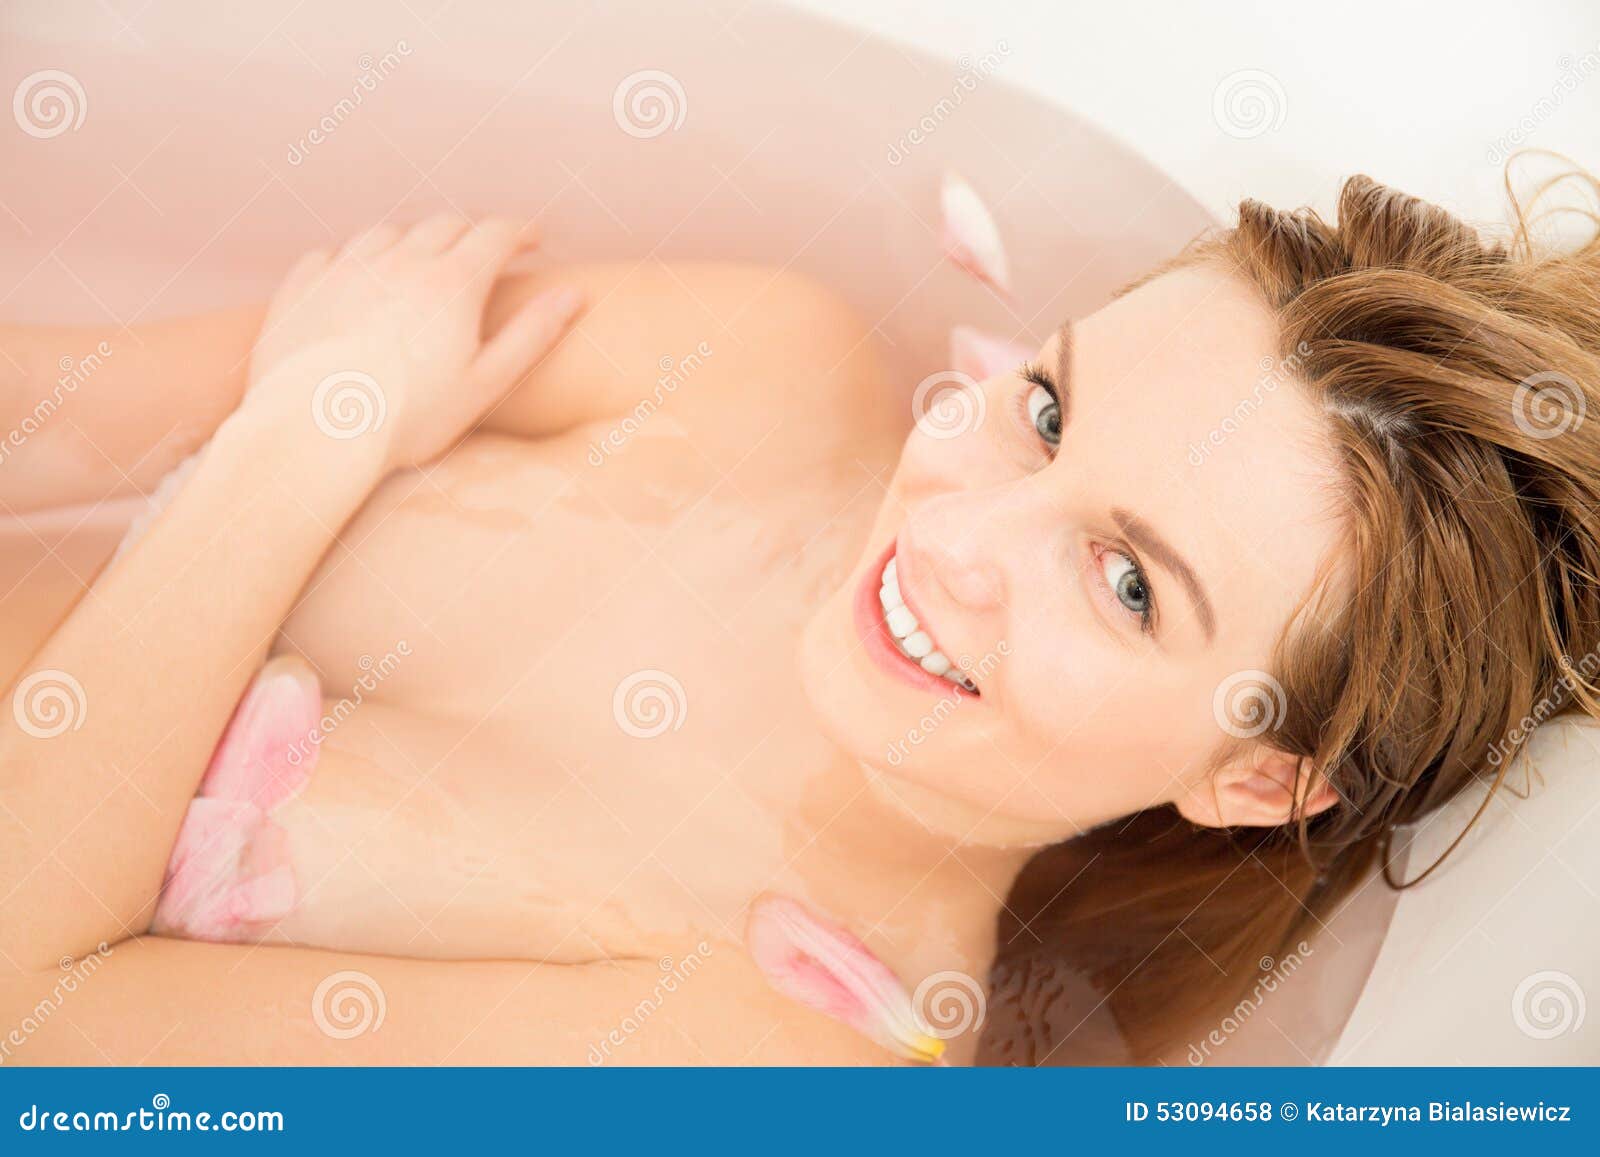 Desnuda en la bañera